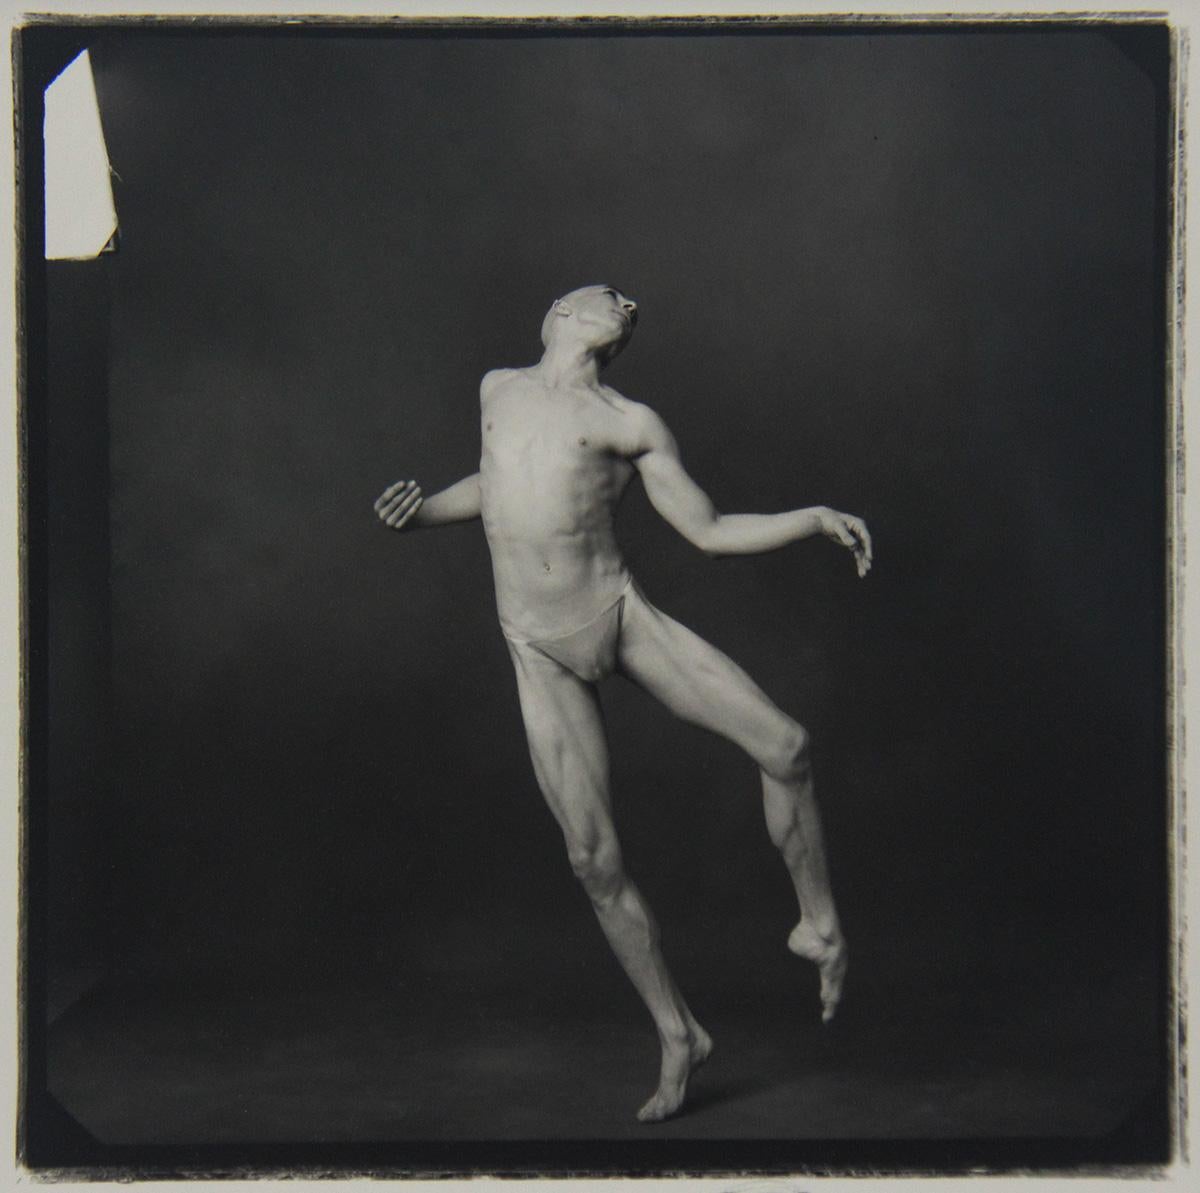 Annie Leibovitz Black and White Photograph - Stephen Petronio